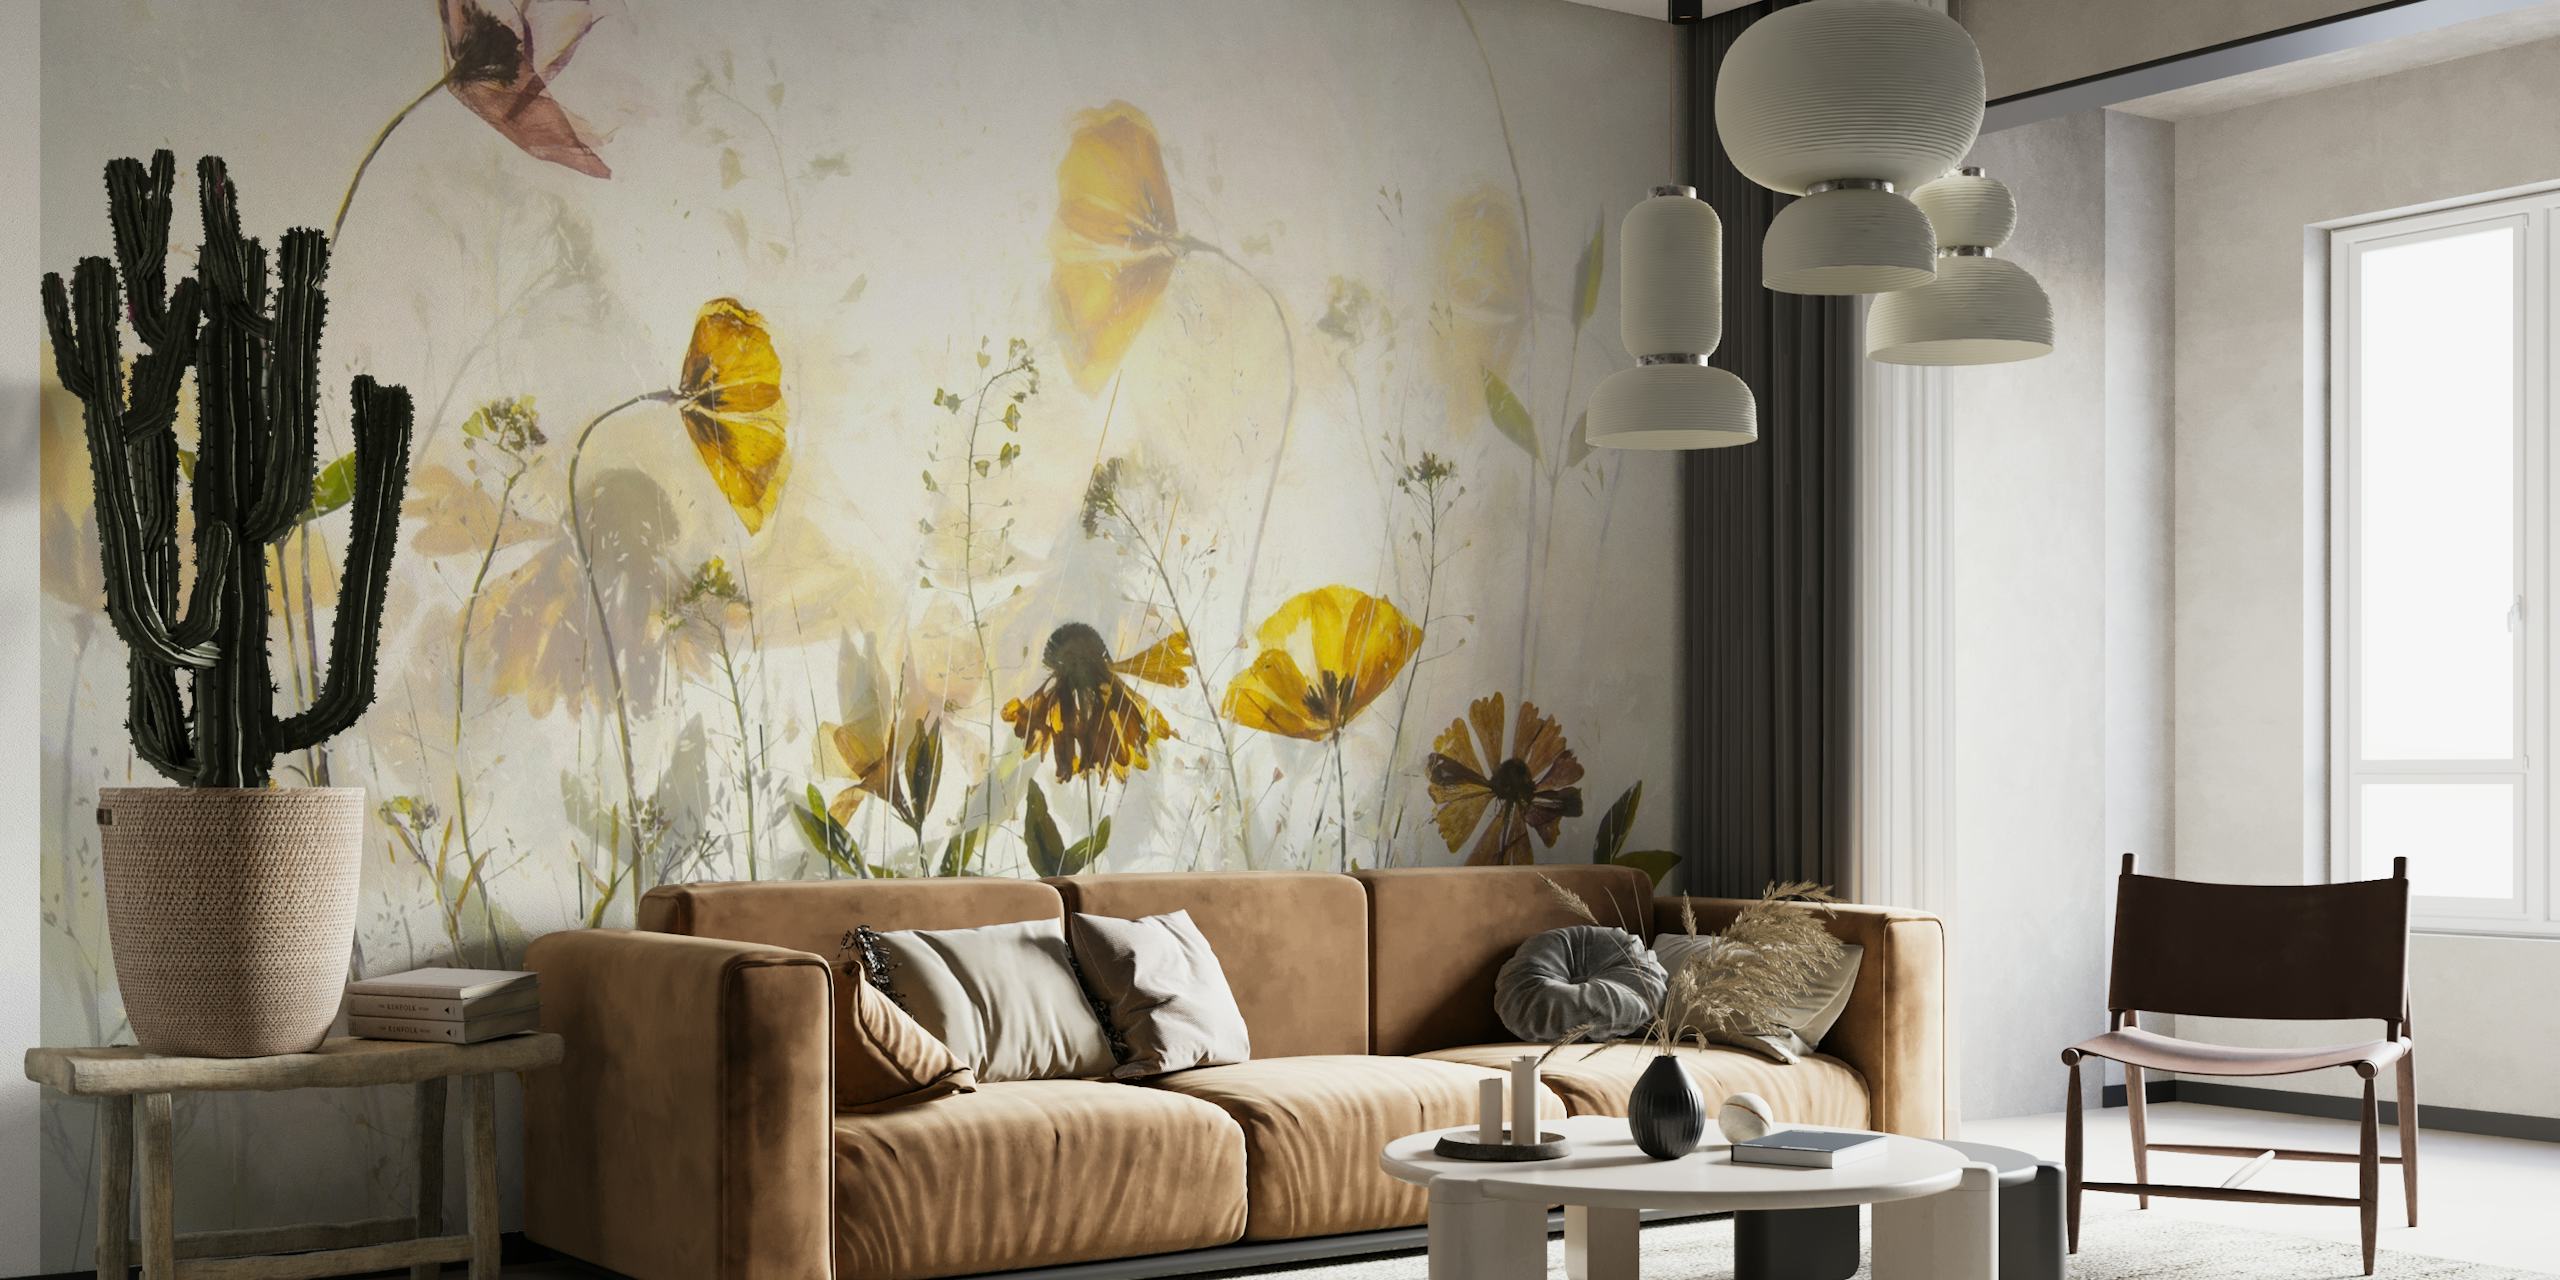 Fototapete „Flower Party“ mit sanften Pastell-Wildblumen in einem ruhigen Design